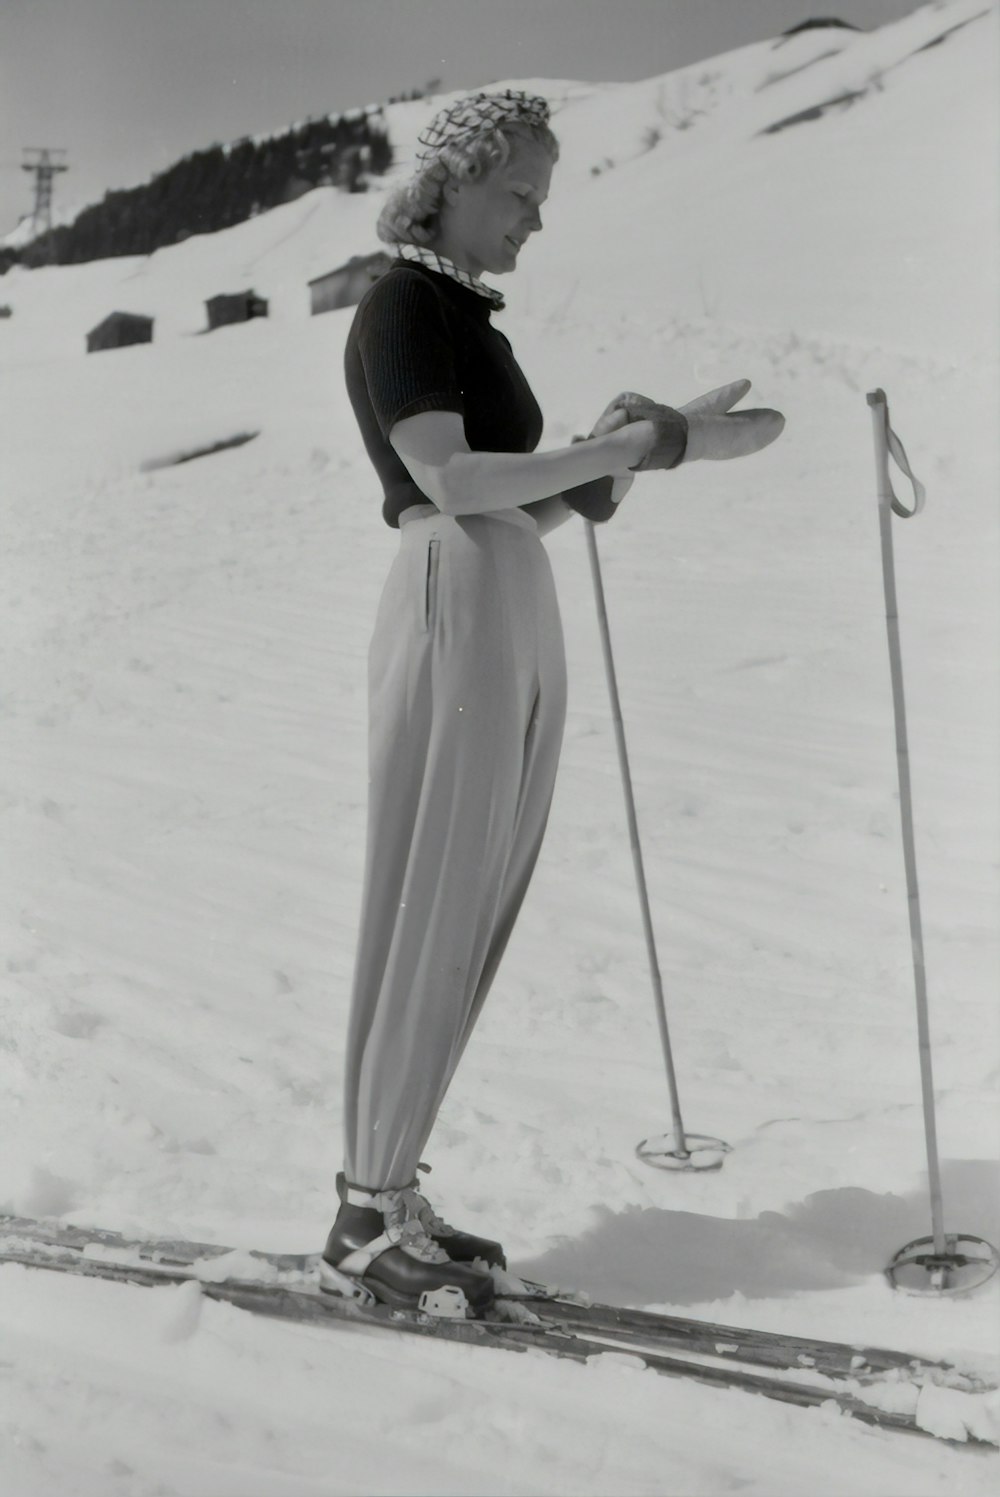 fotografia in scala di grigi di una donna che usa lo snowboard